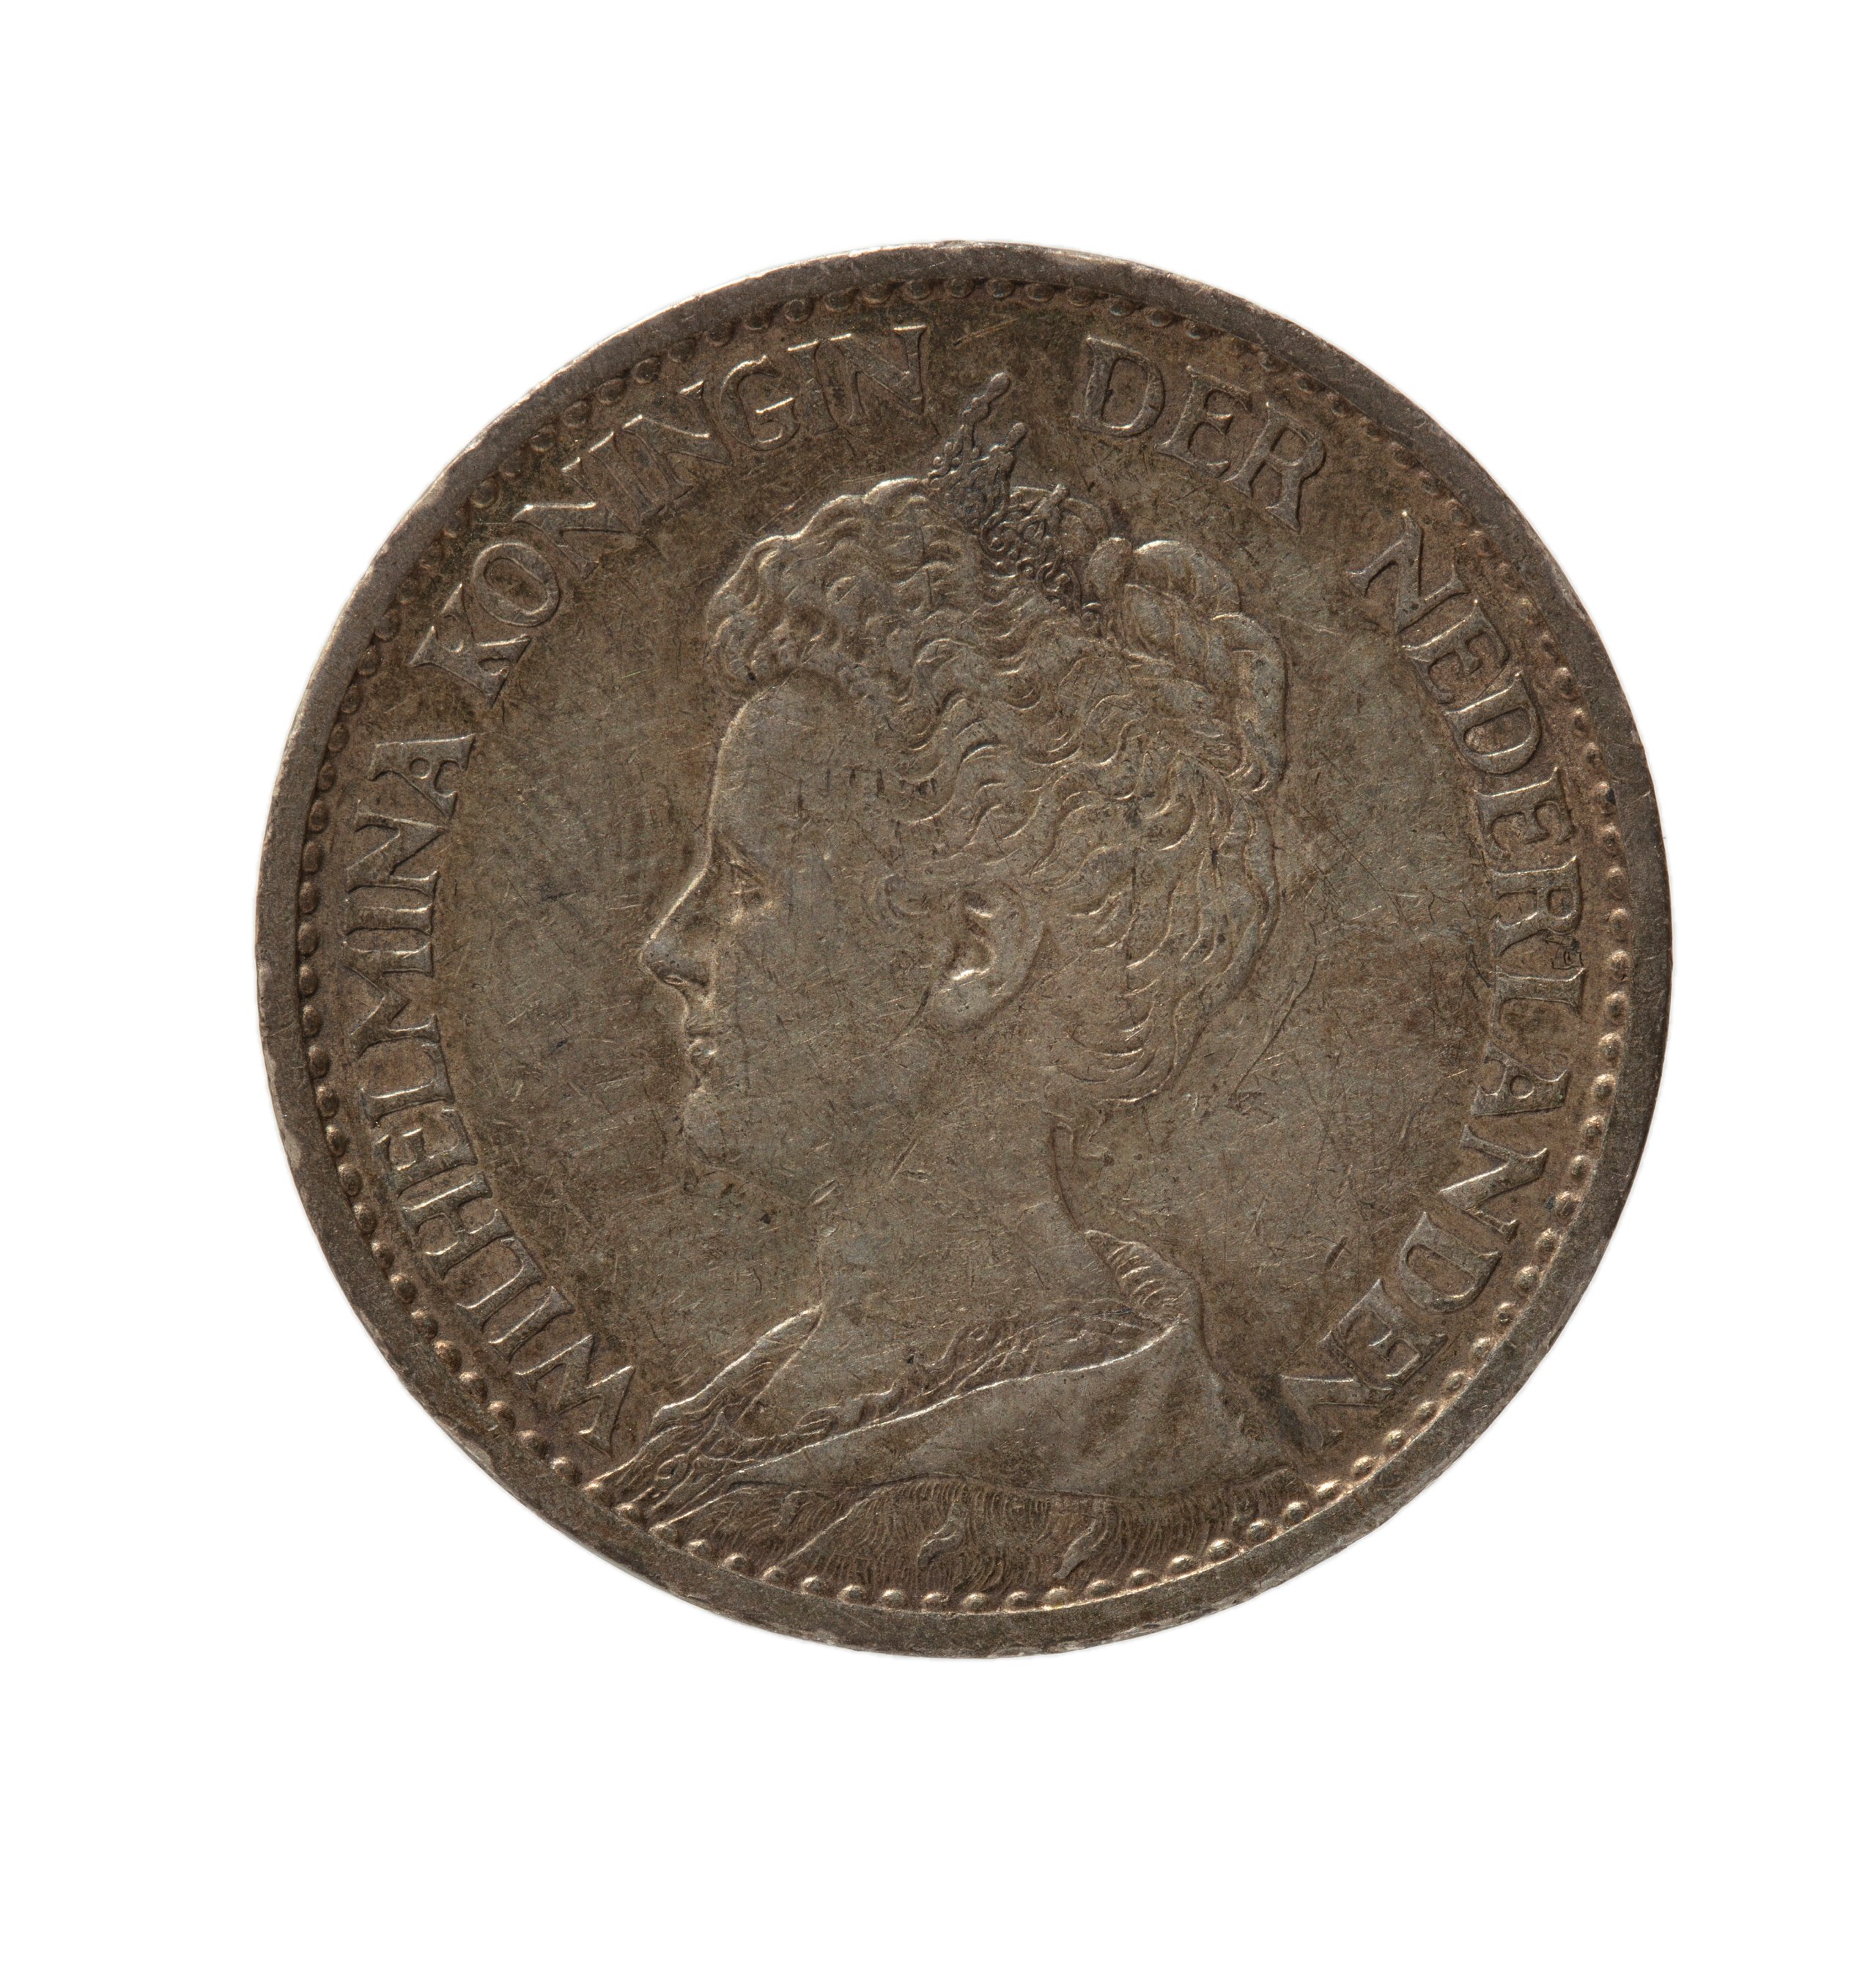 Dutch One Guilder coin